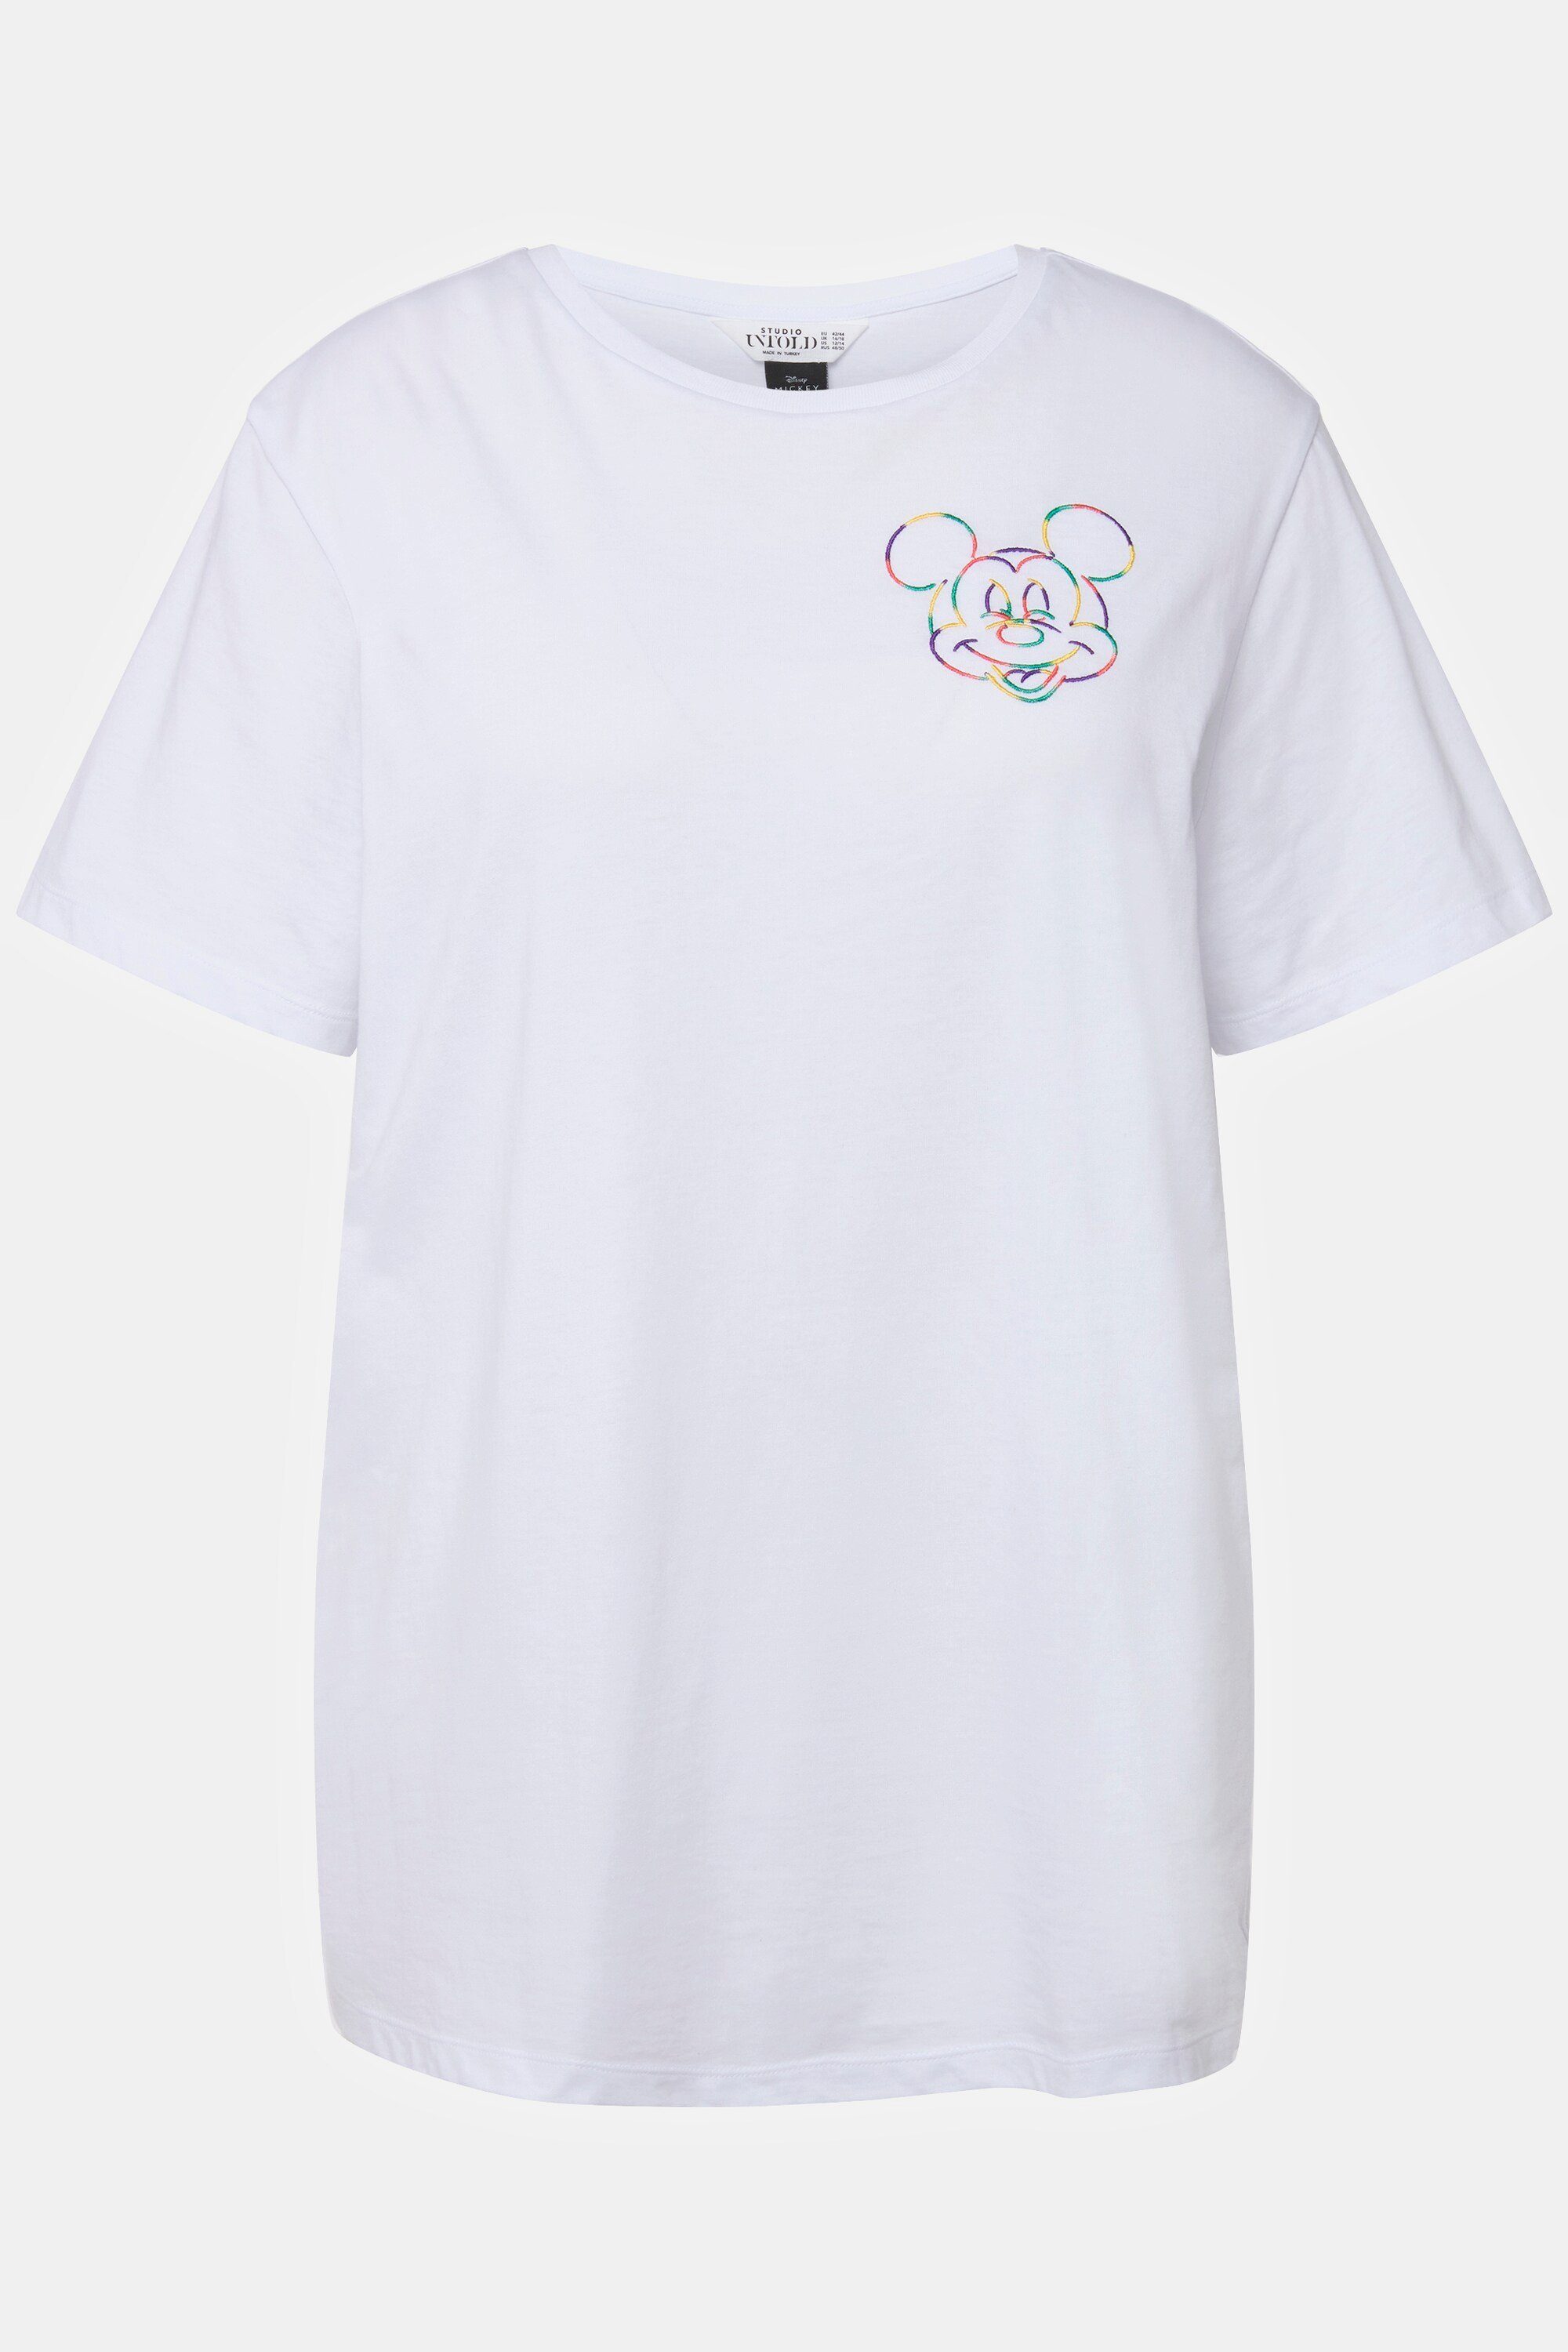 Mickey Rundhalsshirt Untold Mouse Studio T-Shirt Rundhals Stickerei oversized